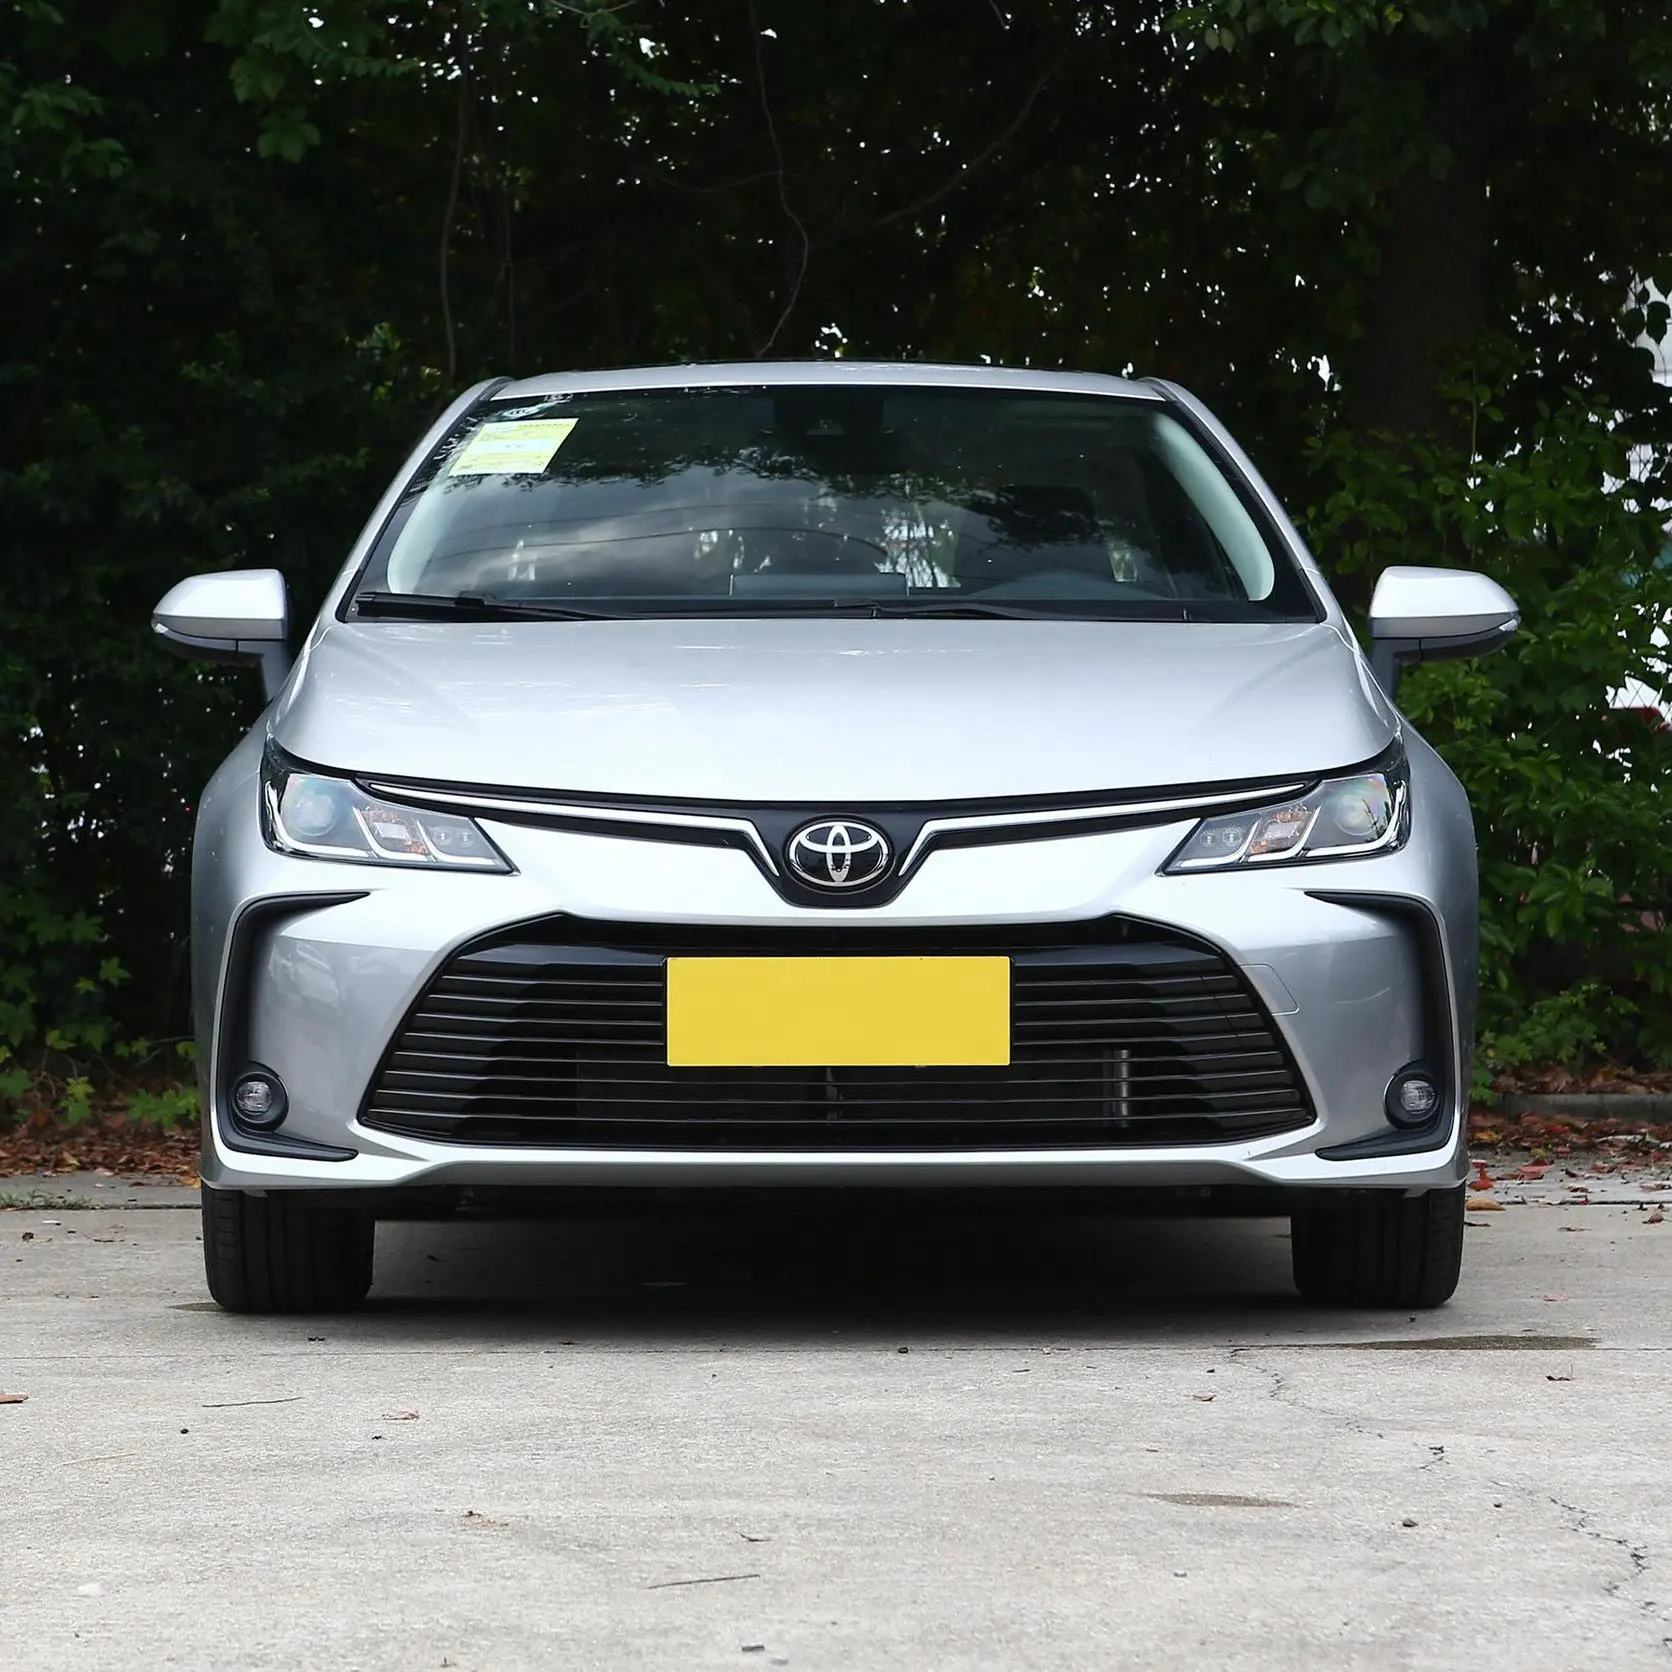 Toyota sedán Toyota Corolla Vehicle Edition coche de gasolina es el coche nuevo más barato